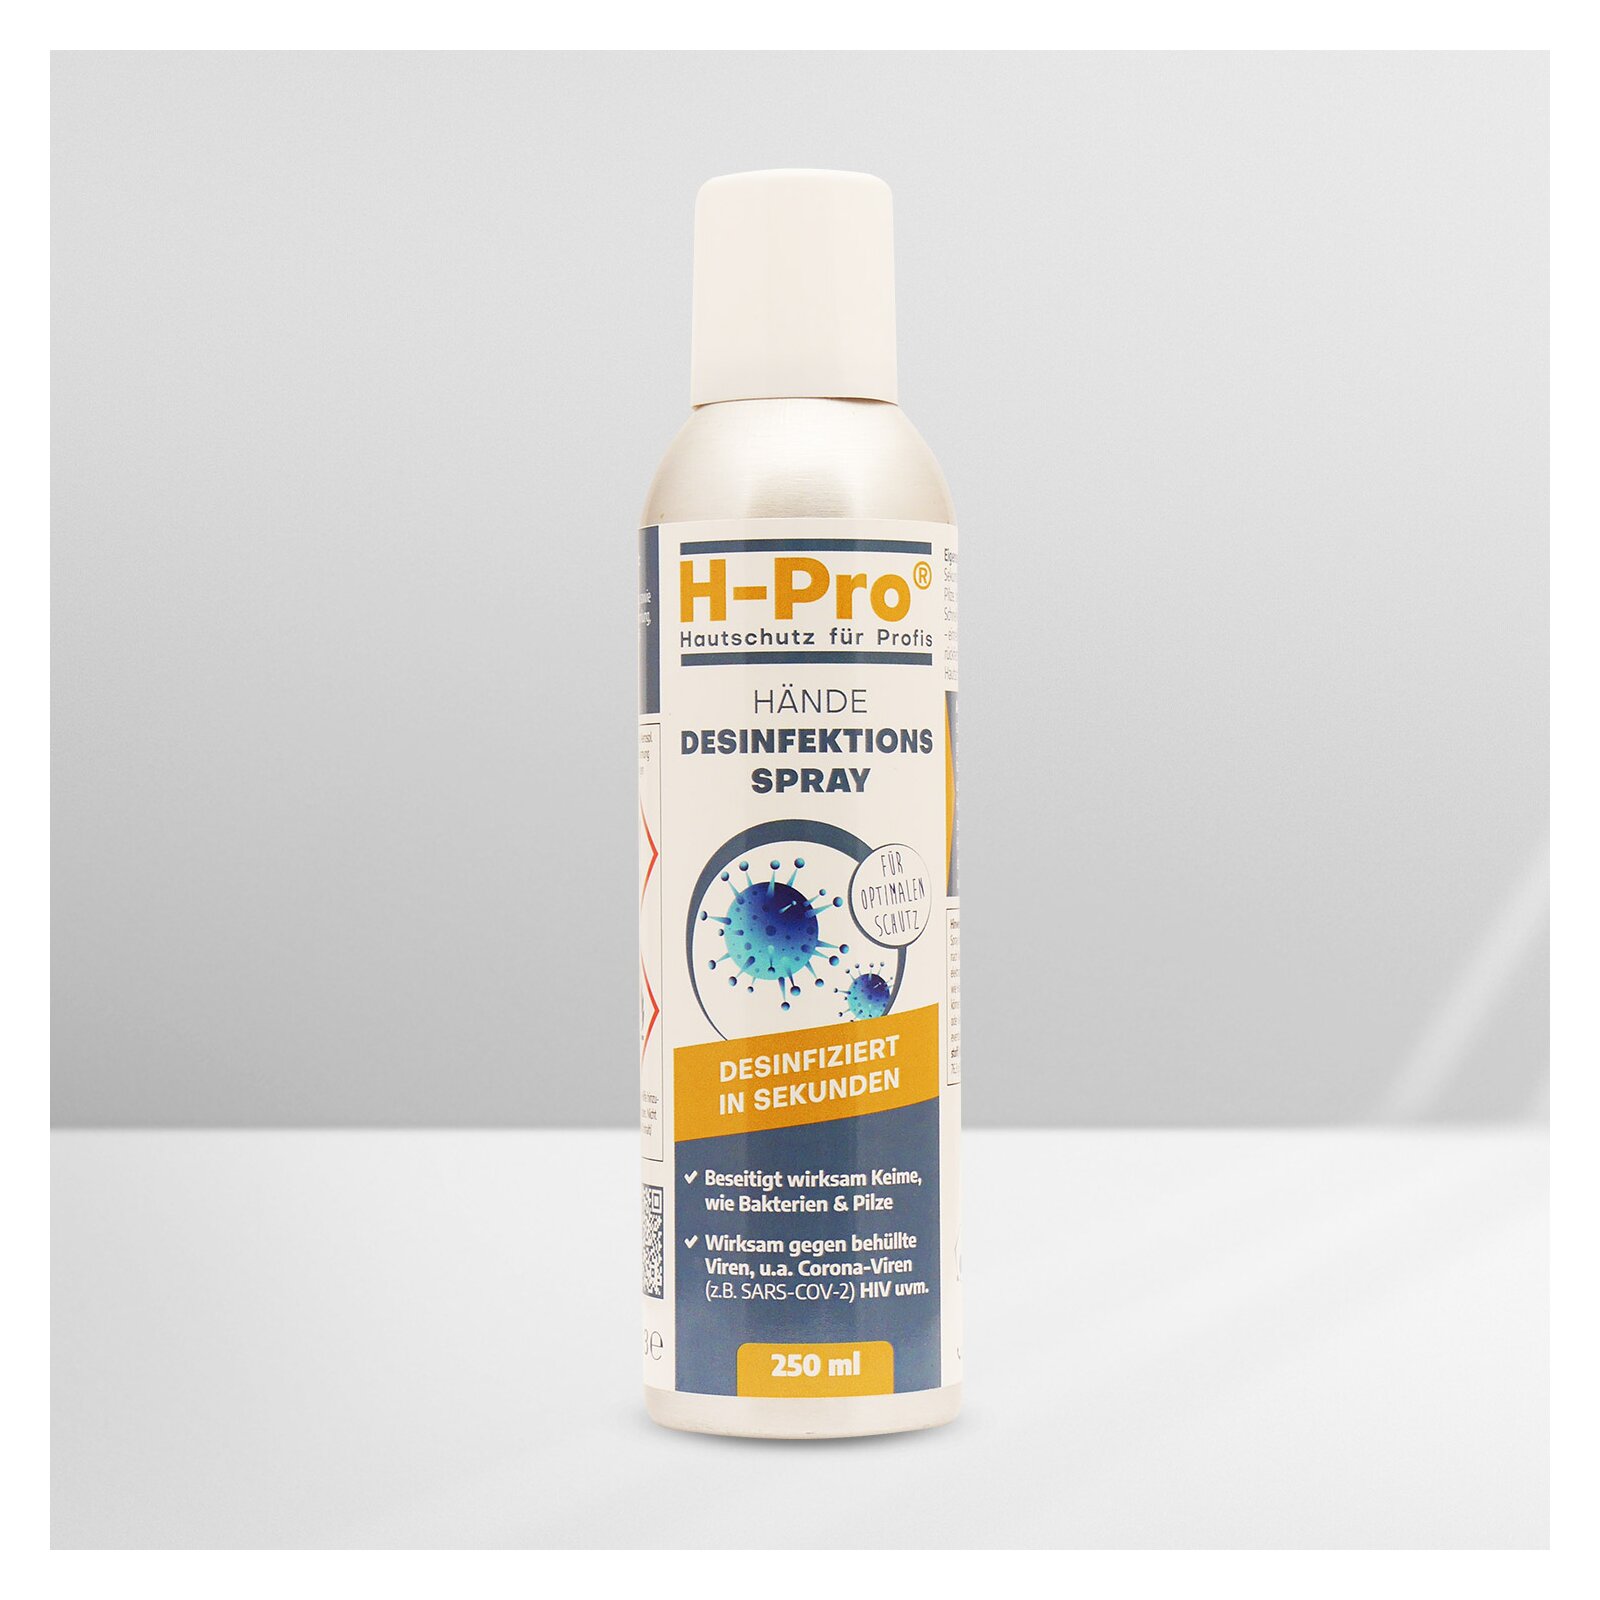 HPro(R) Händedesinfektion Spray 250ml 1 x Dose unter H-Pro Hautschutz